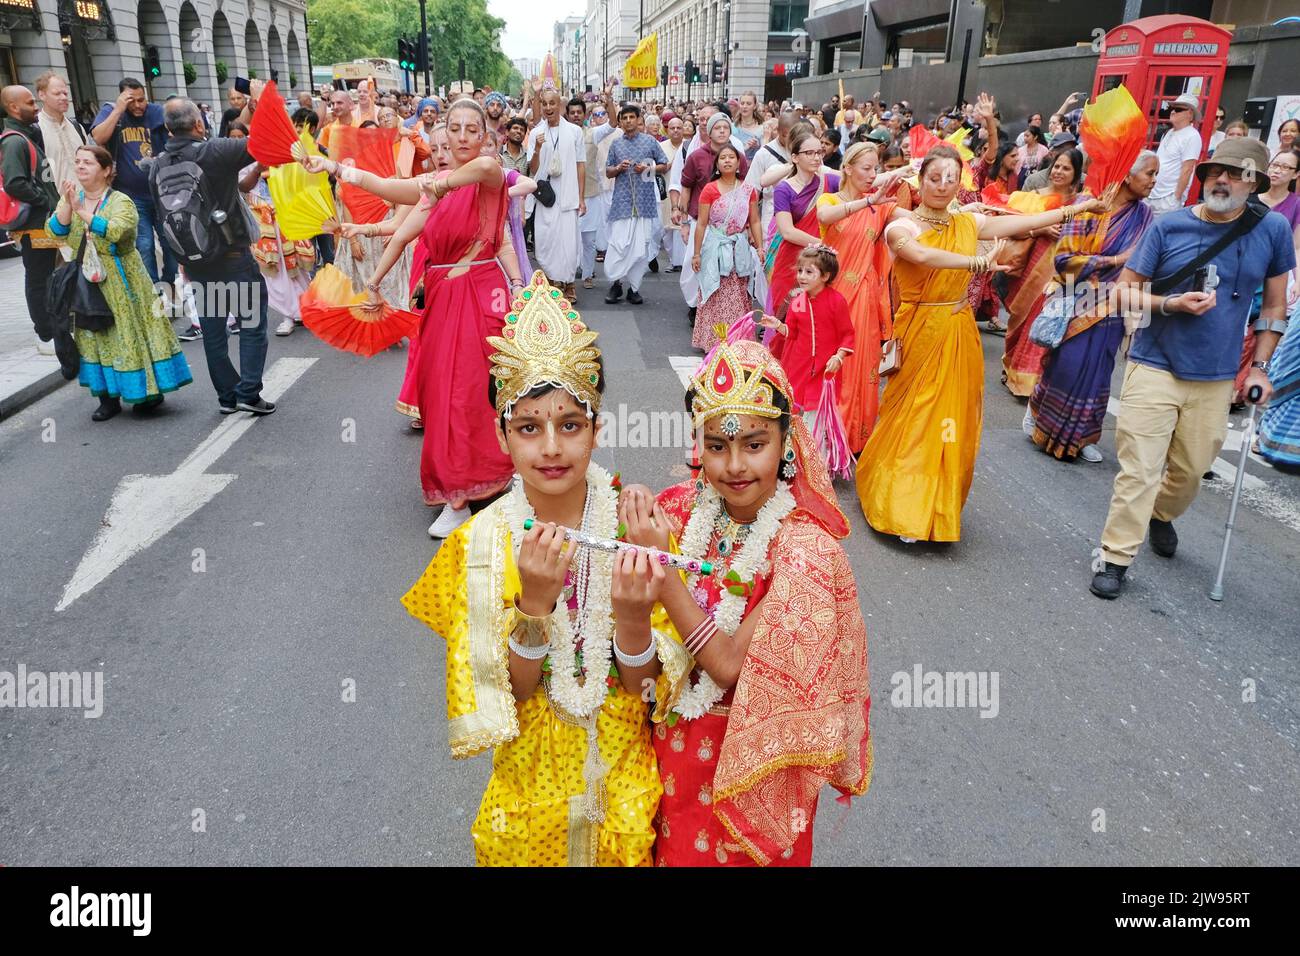 Londres, Royaume-Uni, 4th septembre 2022. Des centaines de dévotés de Hare Krishna dansaient dans une procession colorée à côté d'un char géant tiré par des cordes. Les festivités se sont poursuivies à Trafalgar Square où les clients ont apprécié les spectacles. Crédit : onzième heure Photographie/Alamy Live News Banque D'Images